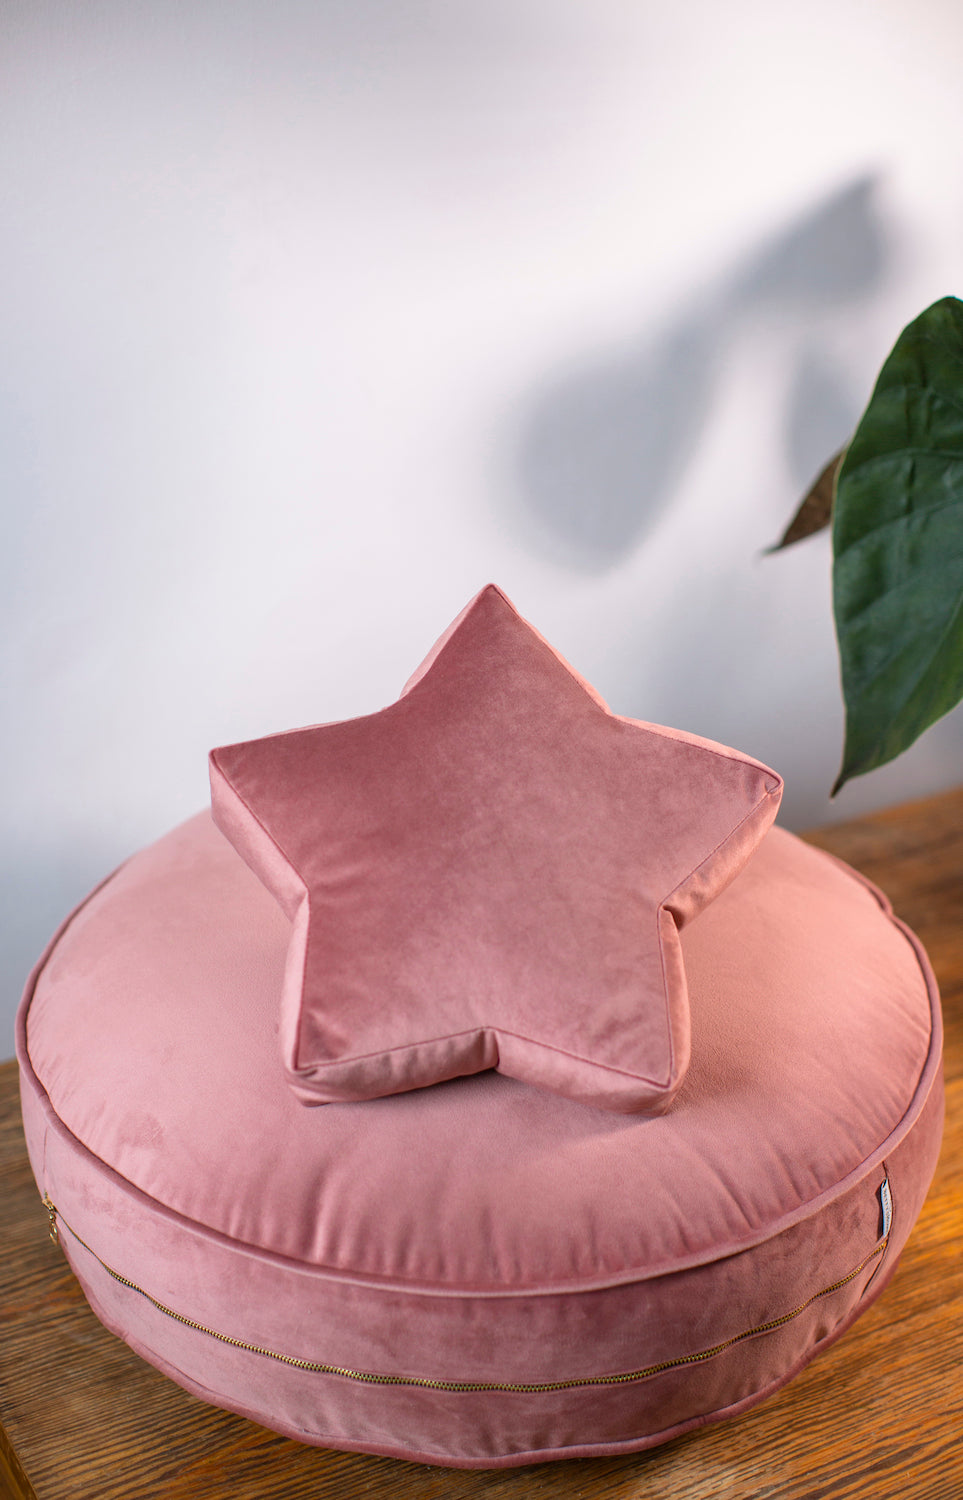 mała poduszka gwiazdka welurowa różowa leżąca na małej pufie welurowej w kolorze różowym od Bettys Home